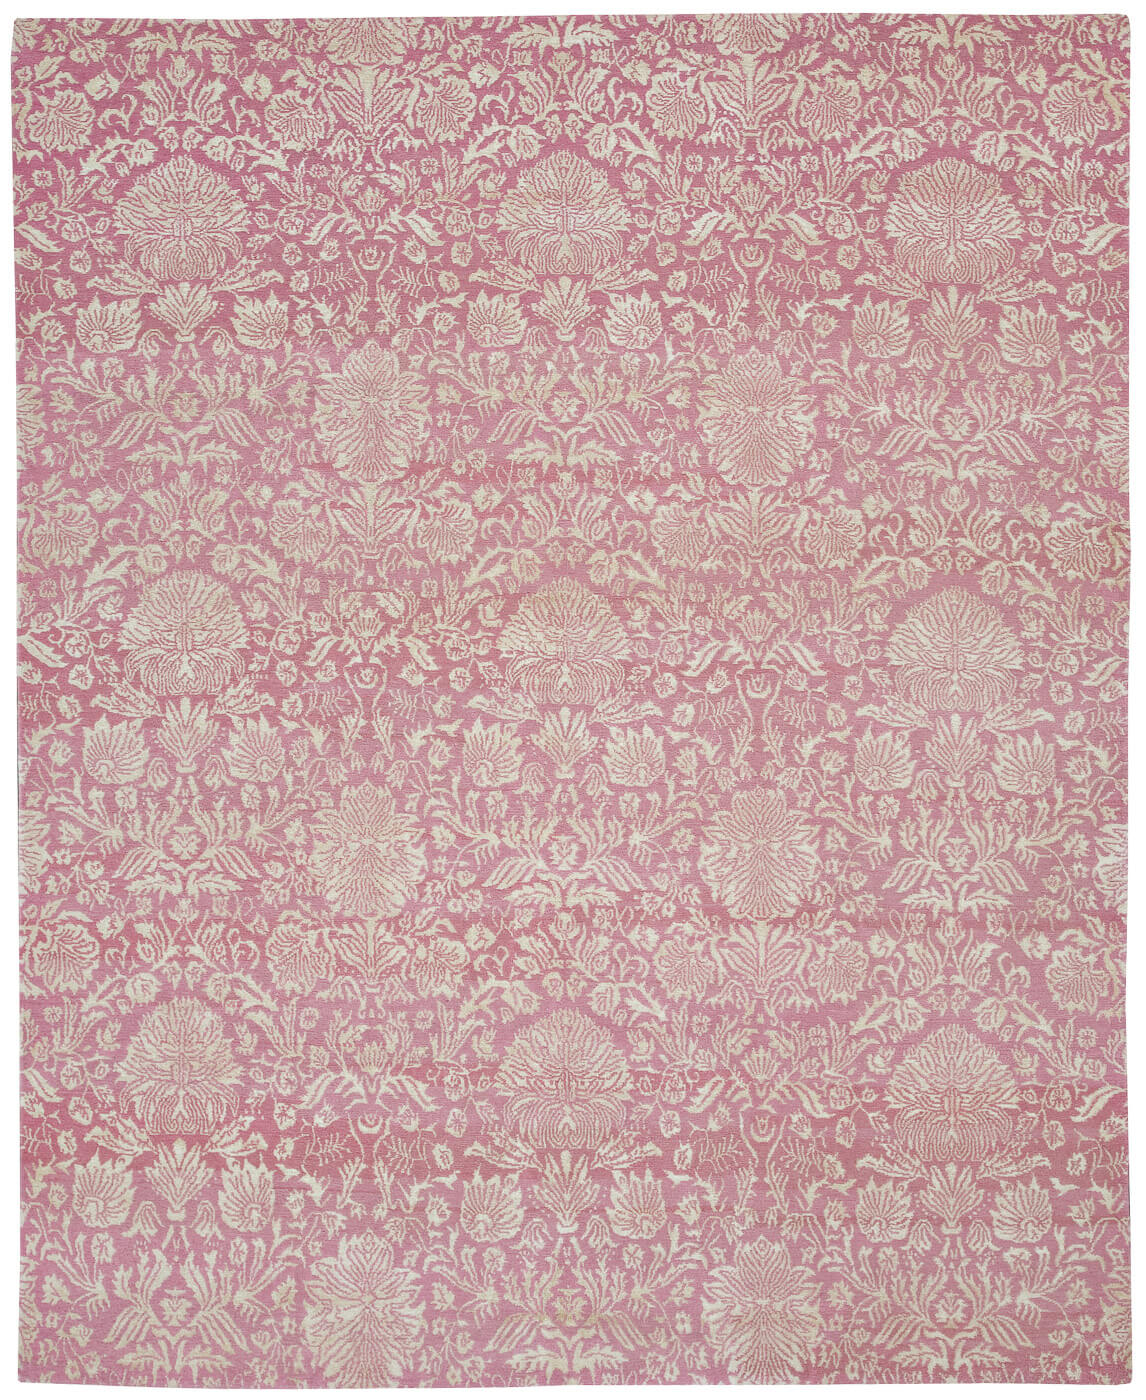 Verona Pink Luxury Hand-woven Rug ☞ Size: 250 x 300 cm